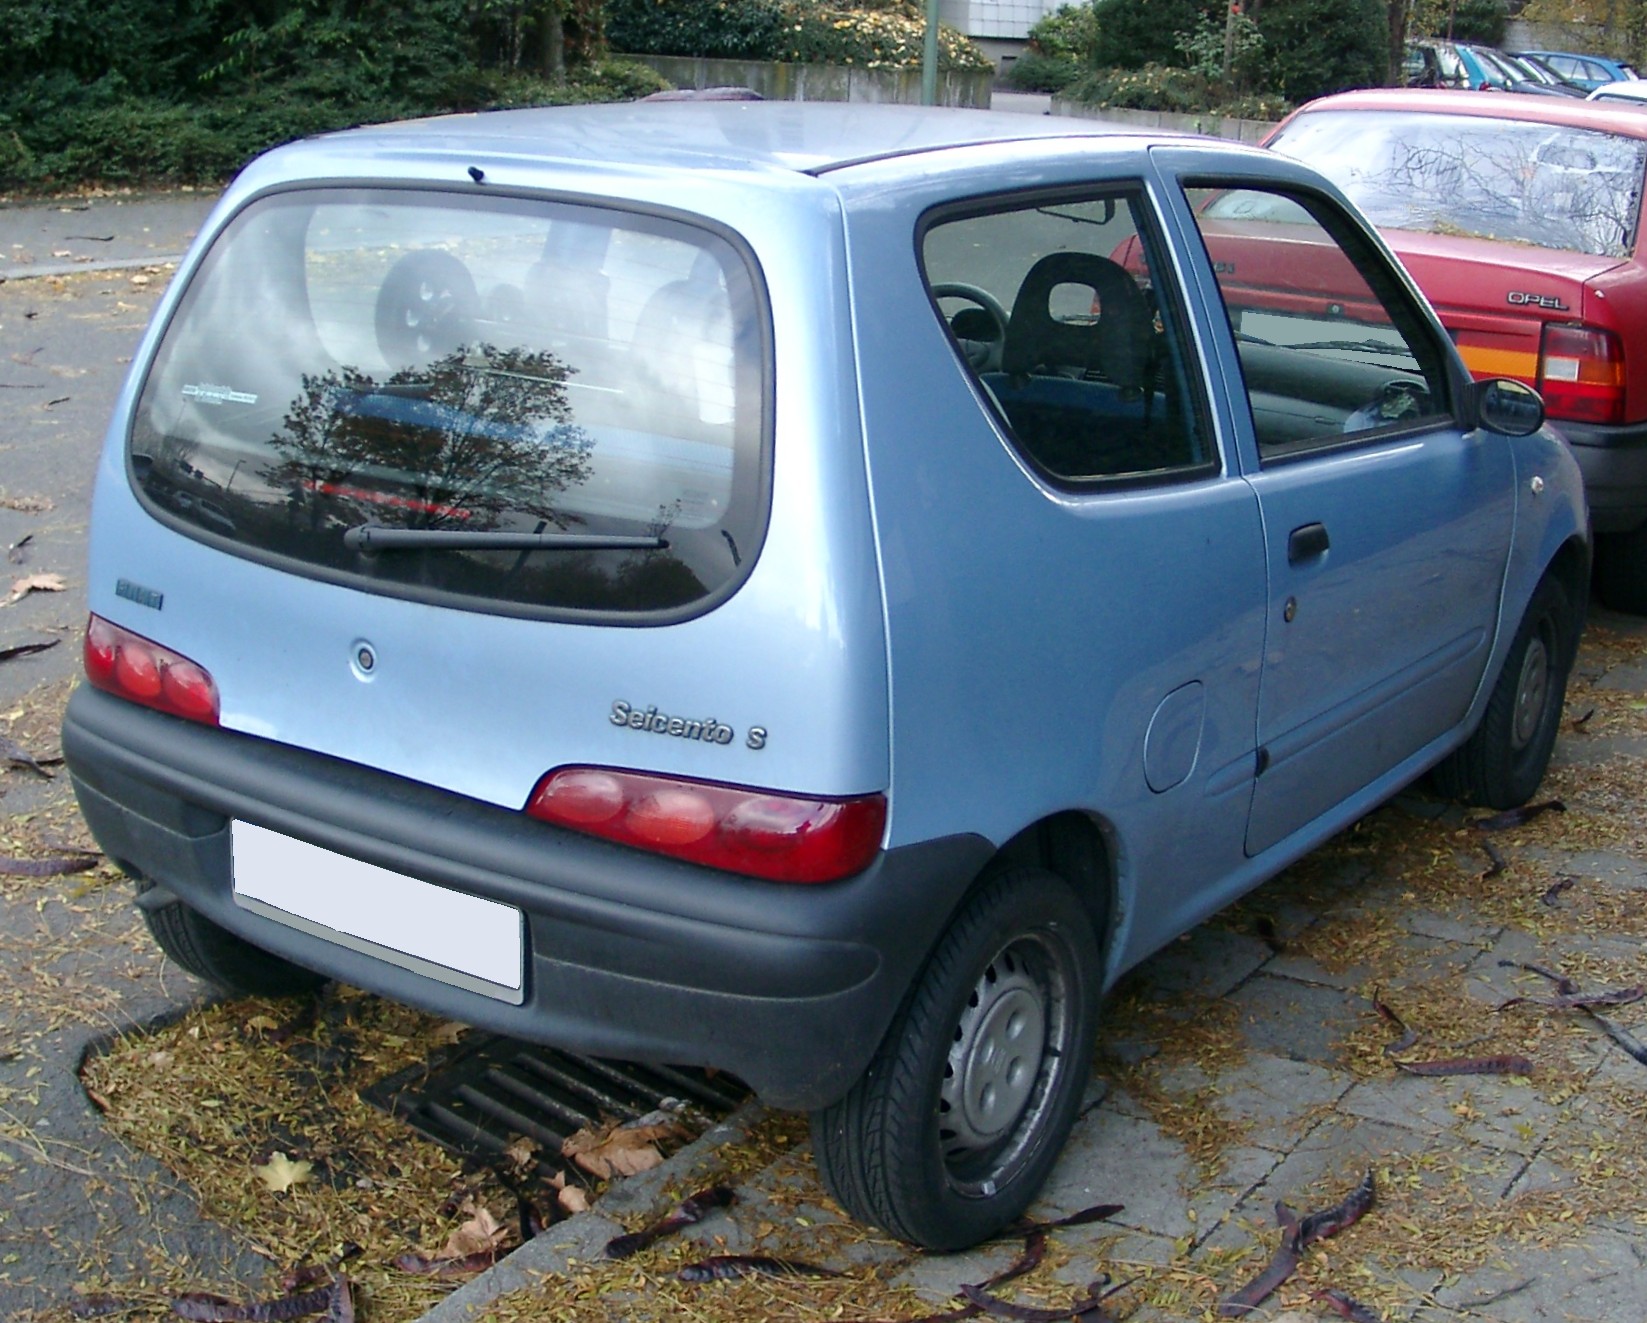  Napoli, scoperta una banda dedita al riciclaggio di auto rubate: 14 denunce